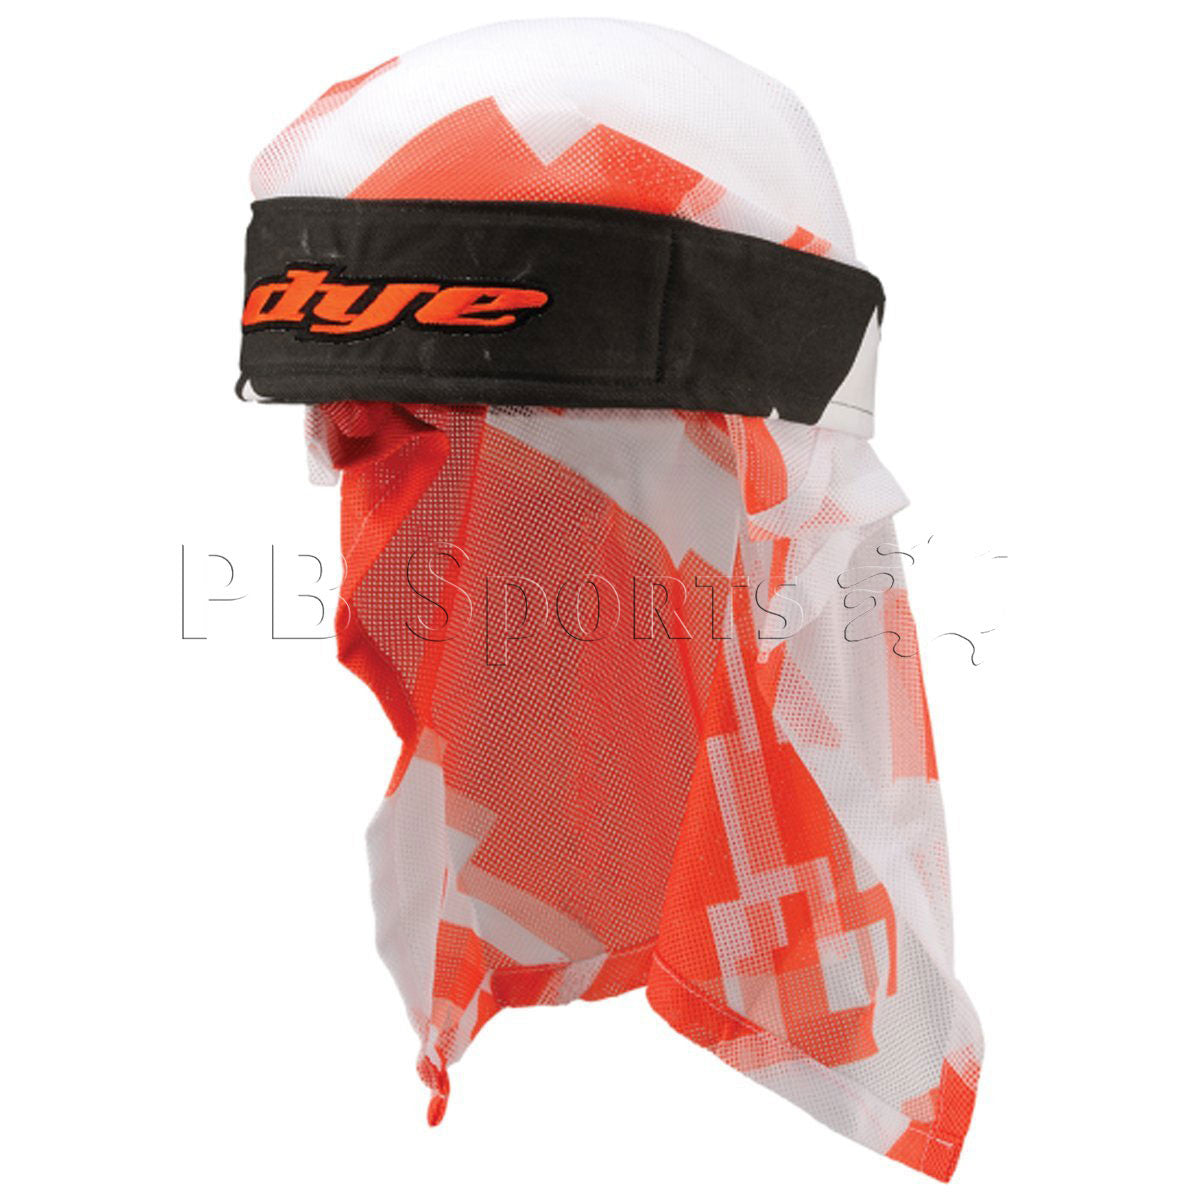 Dye Head Wrap - Airstrike Orange/White - DYE